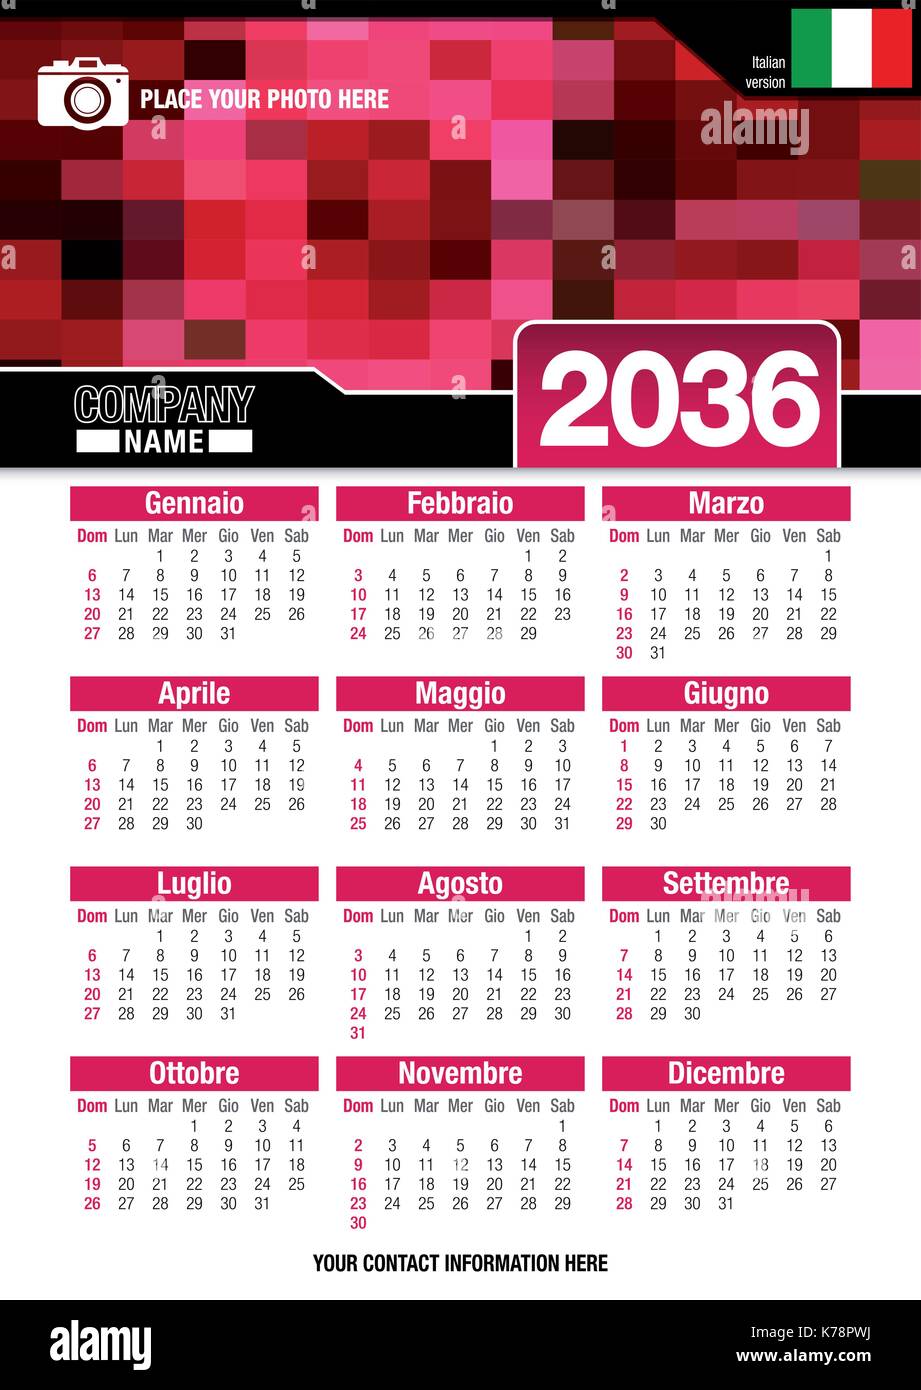 Utile calendario da parete 2036 con design di colori rosso mosaico. Formato A4 verticale. Dimensioni: 210mm x 297mm. Versione italiana - immagine vettoriale Illustrazione Vettoriale